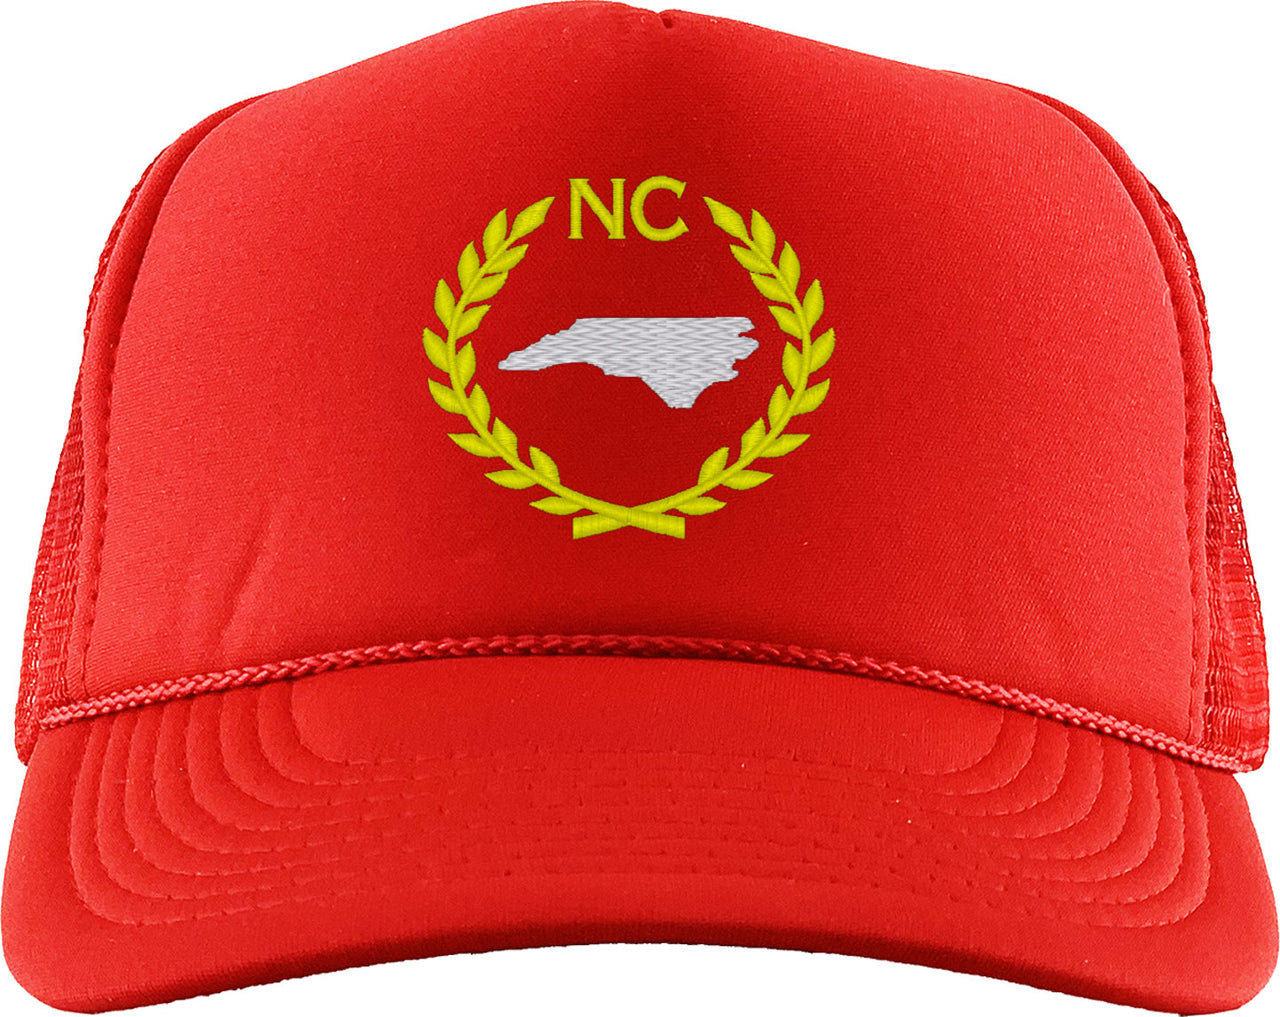 North Carolina State Foam Trucker Hat